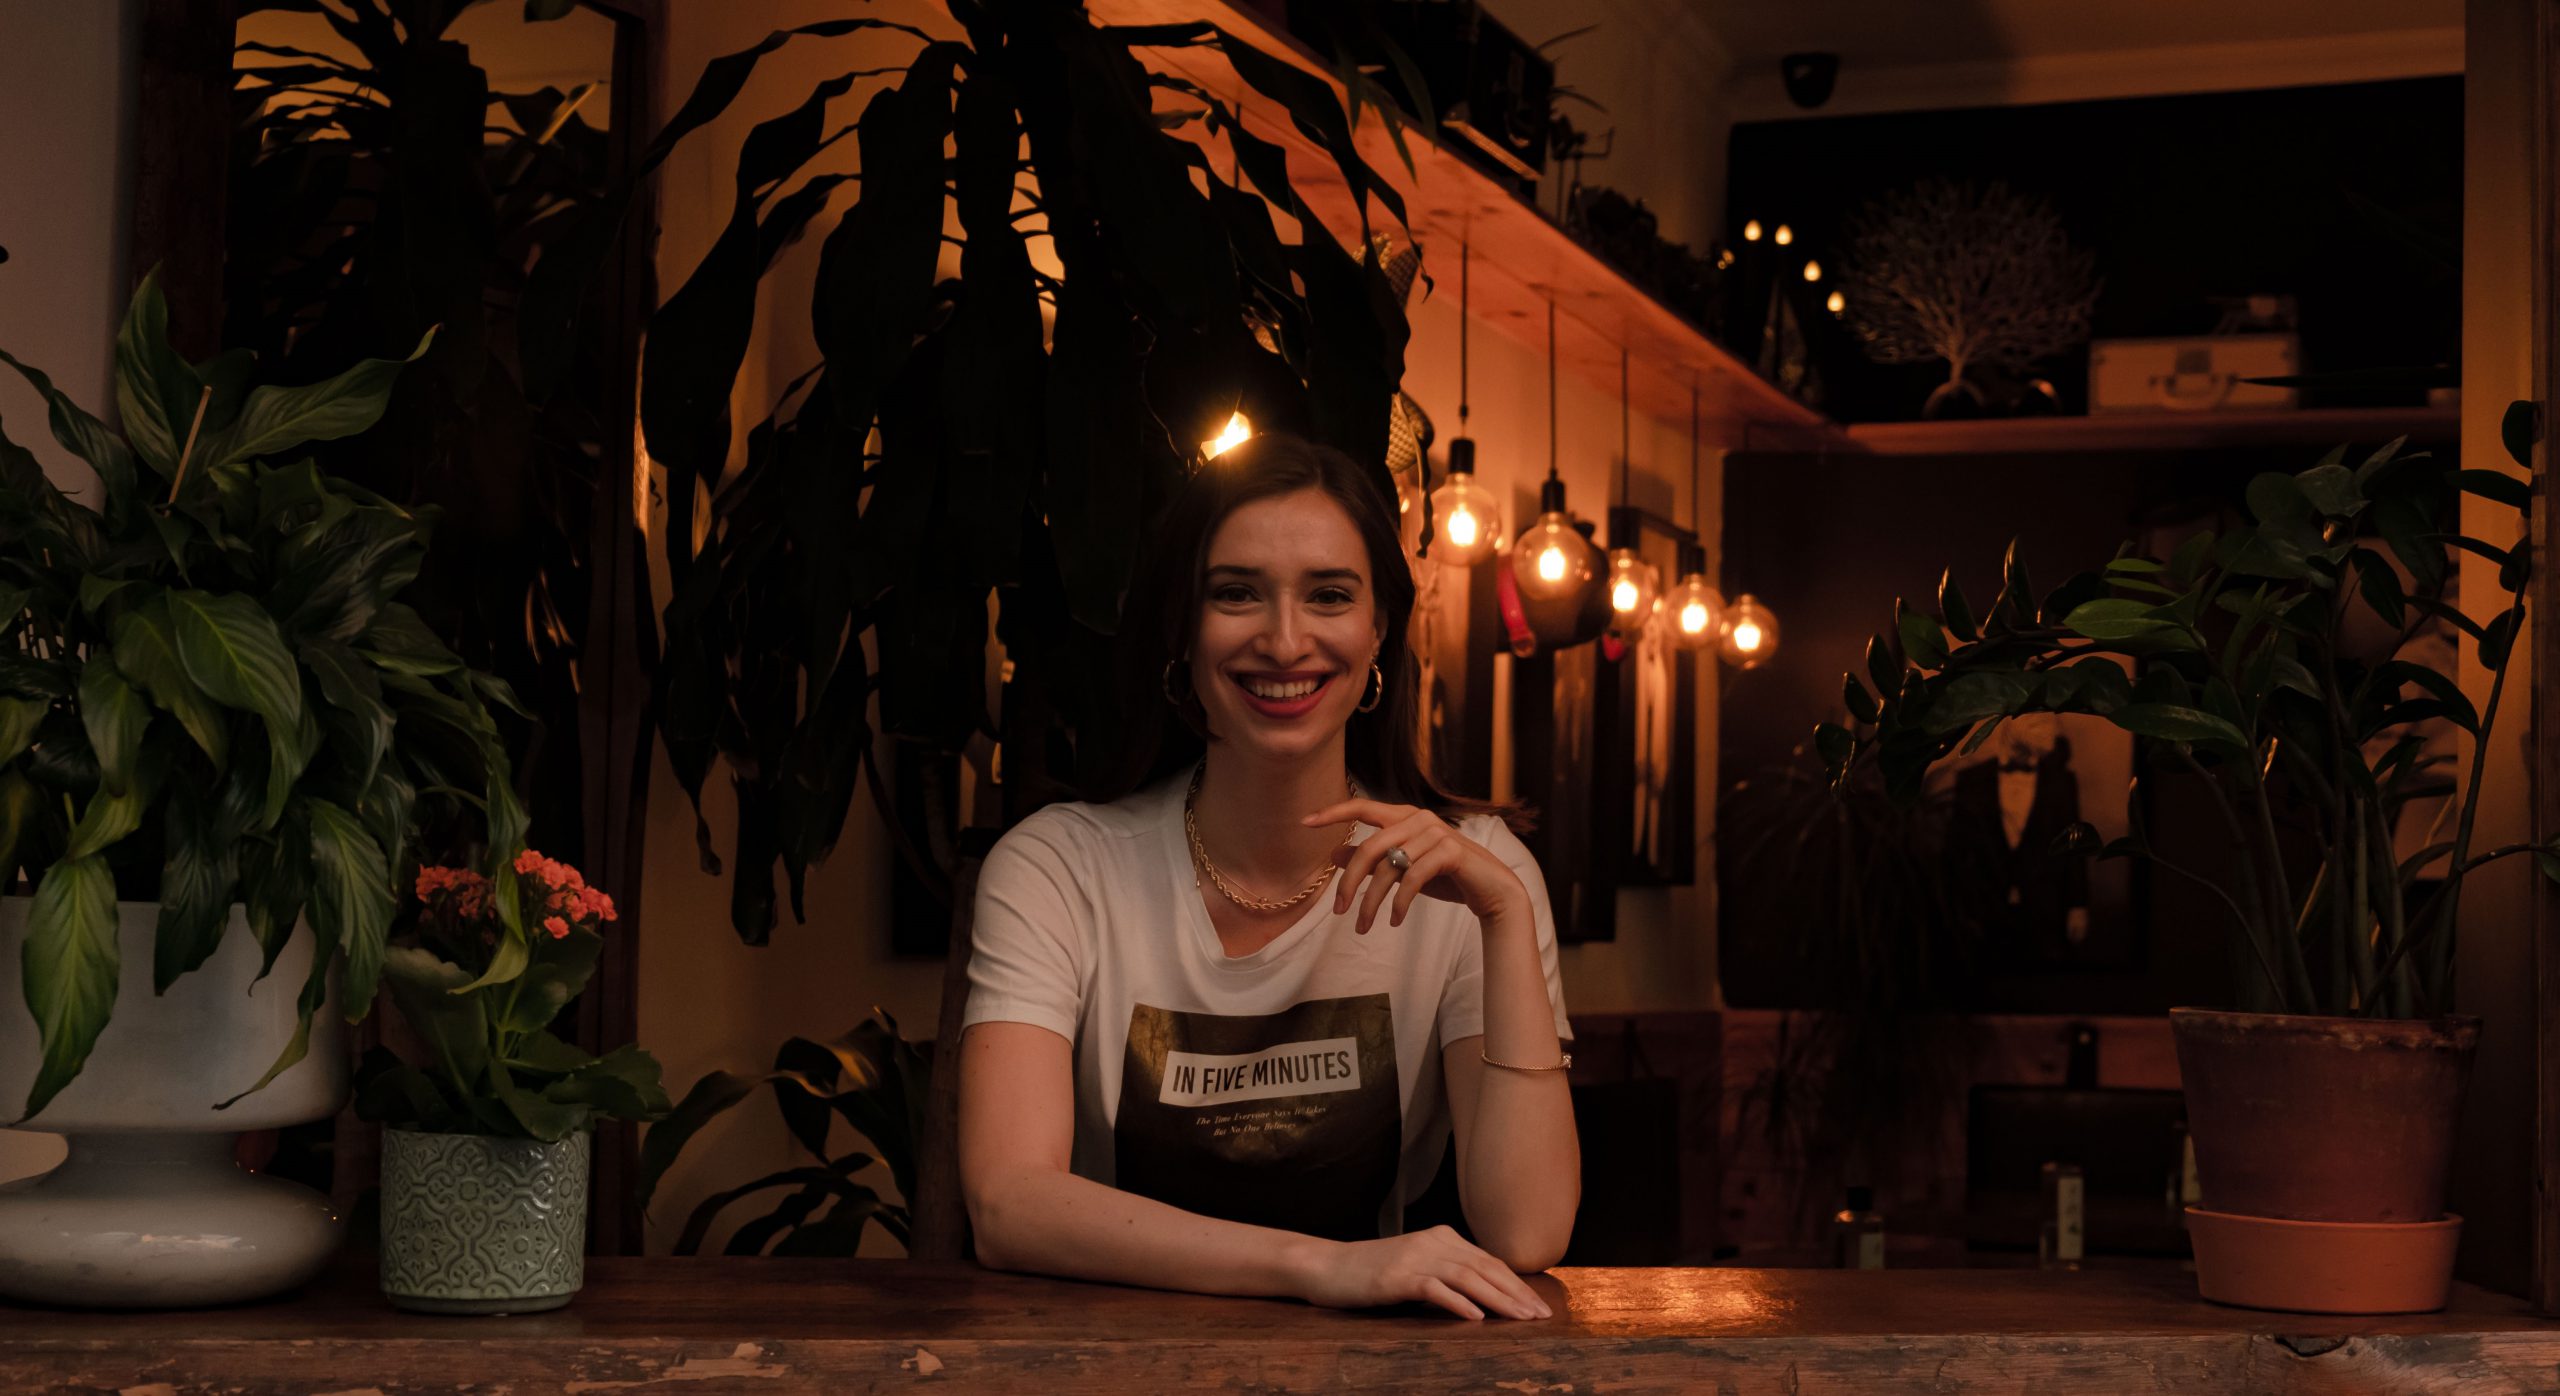 Smiling girl in restaurant